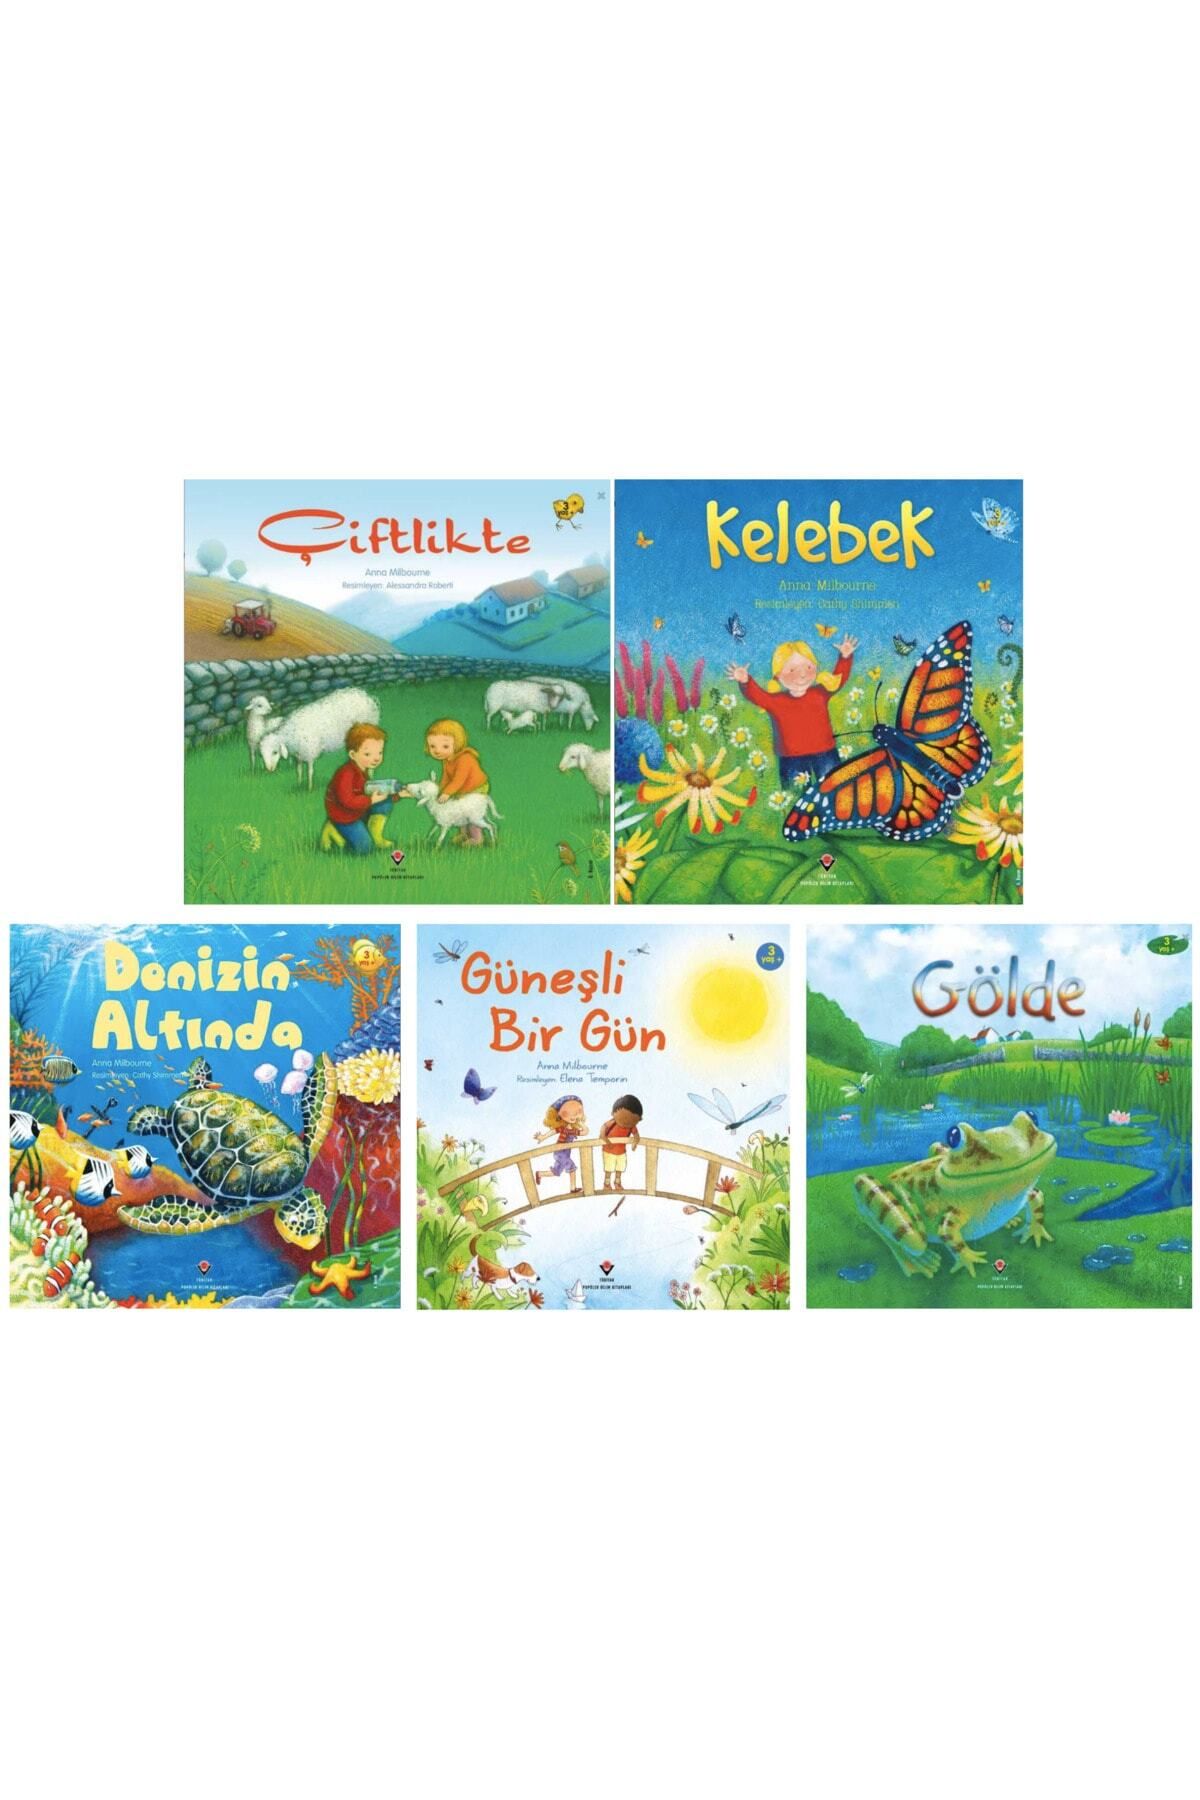 Tübitak Yayınları Güneşli Bir Gün - Çiftlikte - Gölde - Kelebek - Denizin Altında - Okul Öncesi 5 Kitap Set